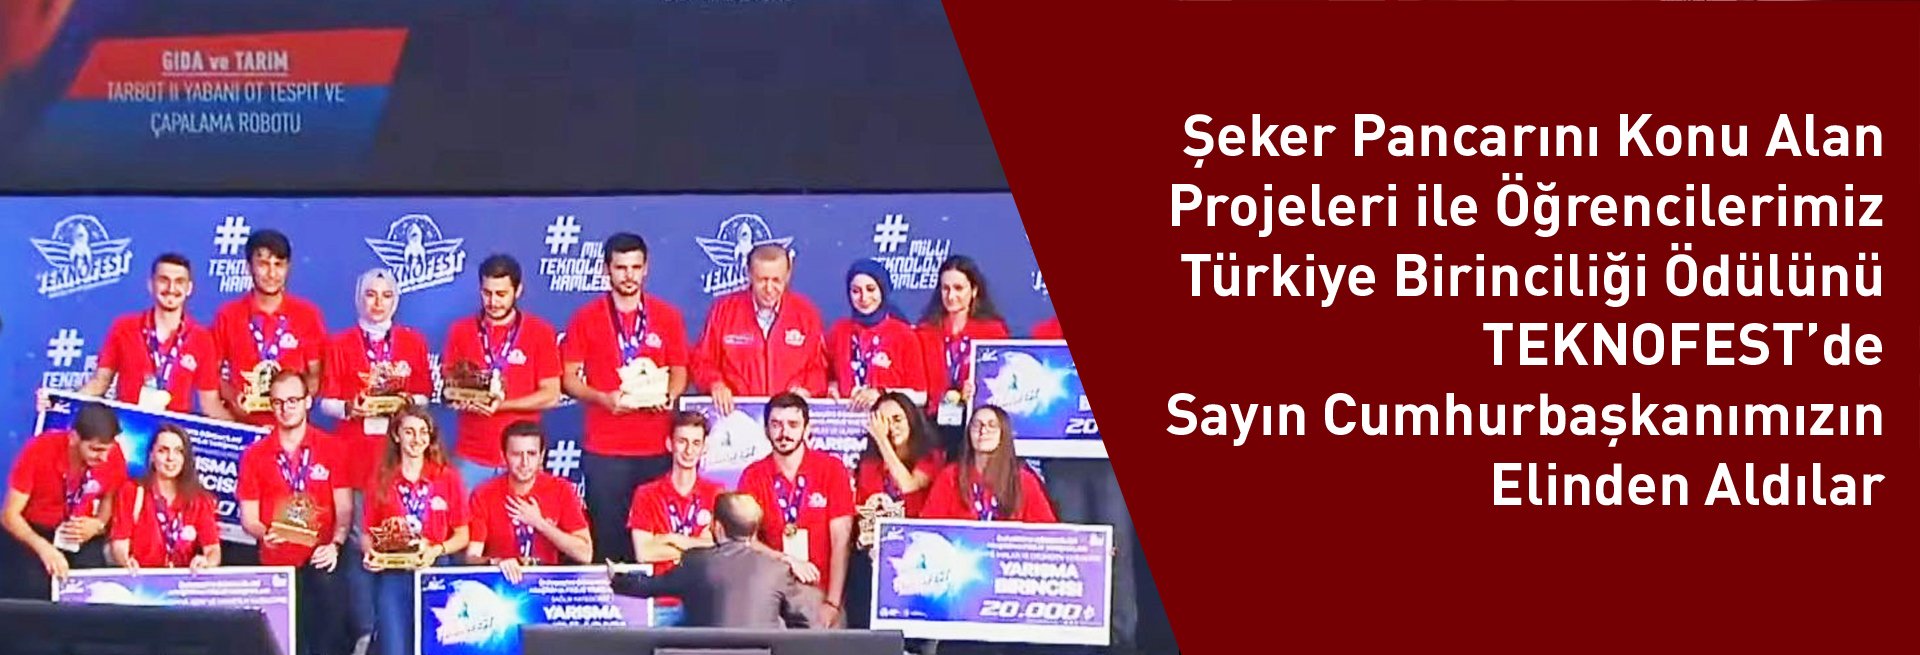 Öğrencilerimizden TÜBİTAK Proje Yarışmasında “Yabani Ot Tespit ve Çapalama Robotu Projesi” ile Türkiye Birinciliği!